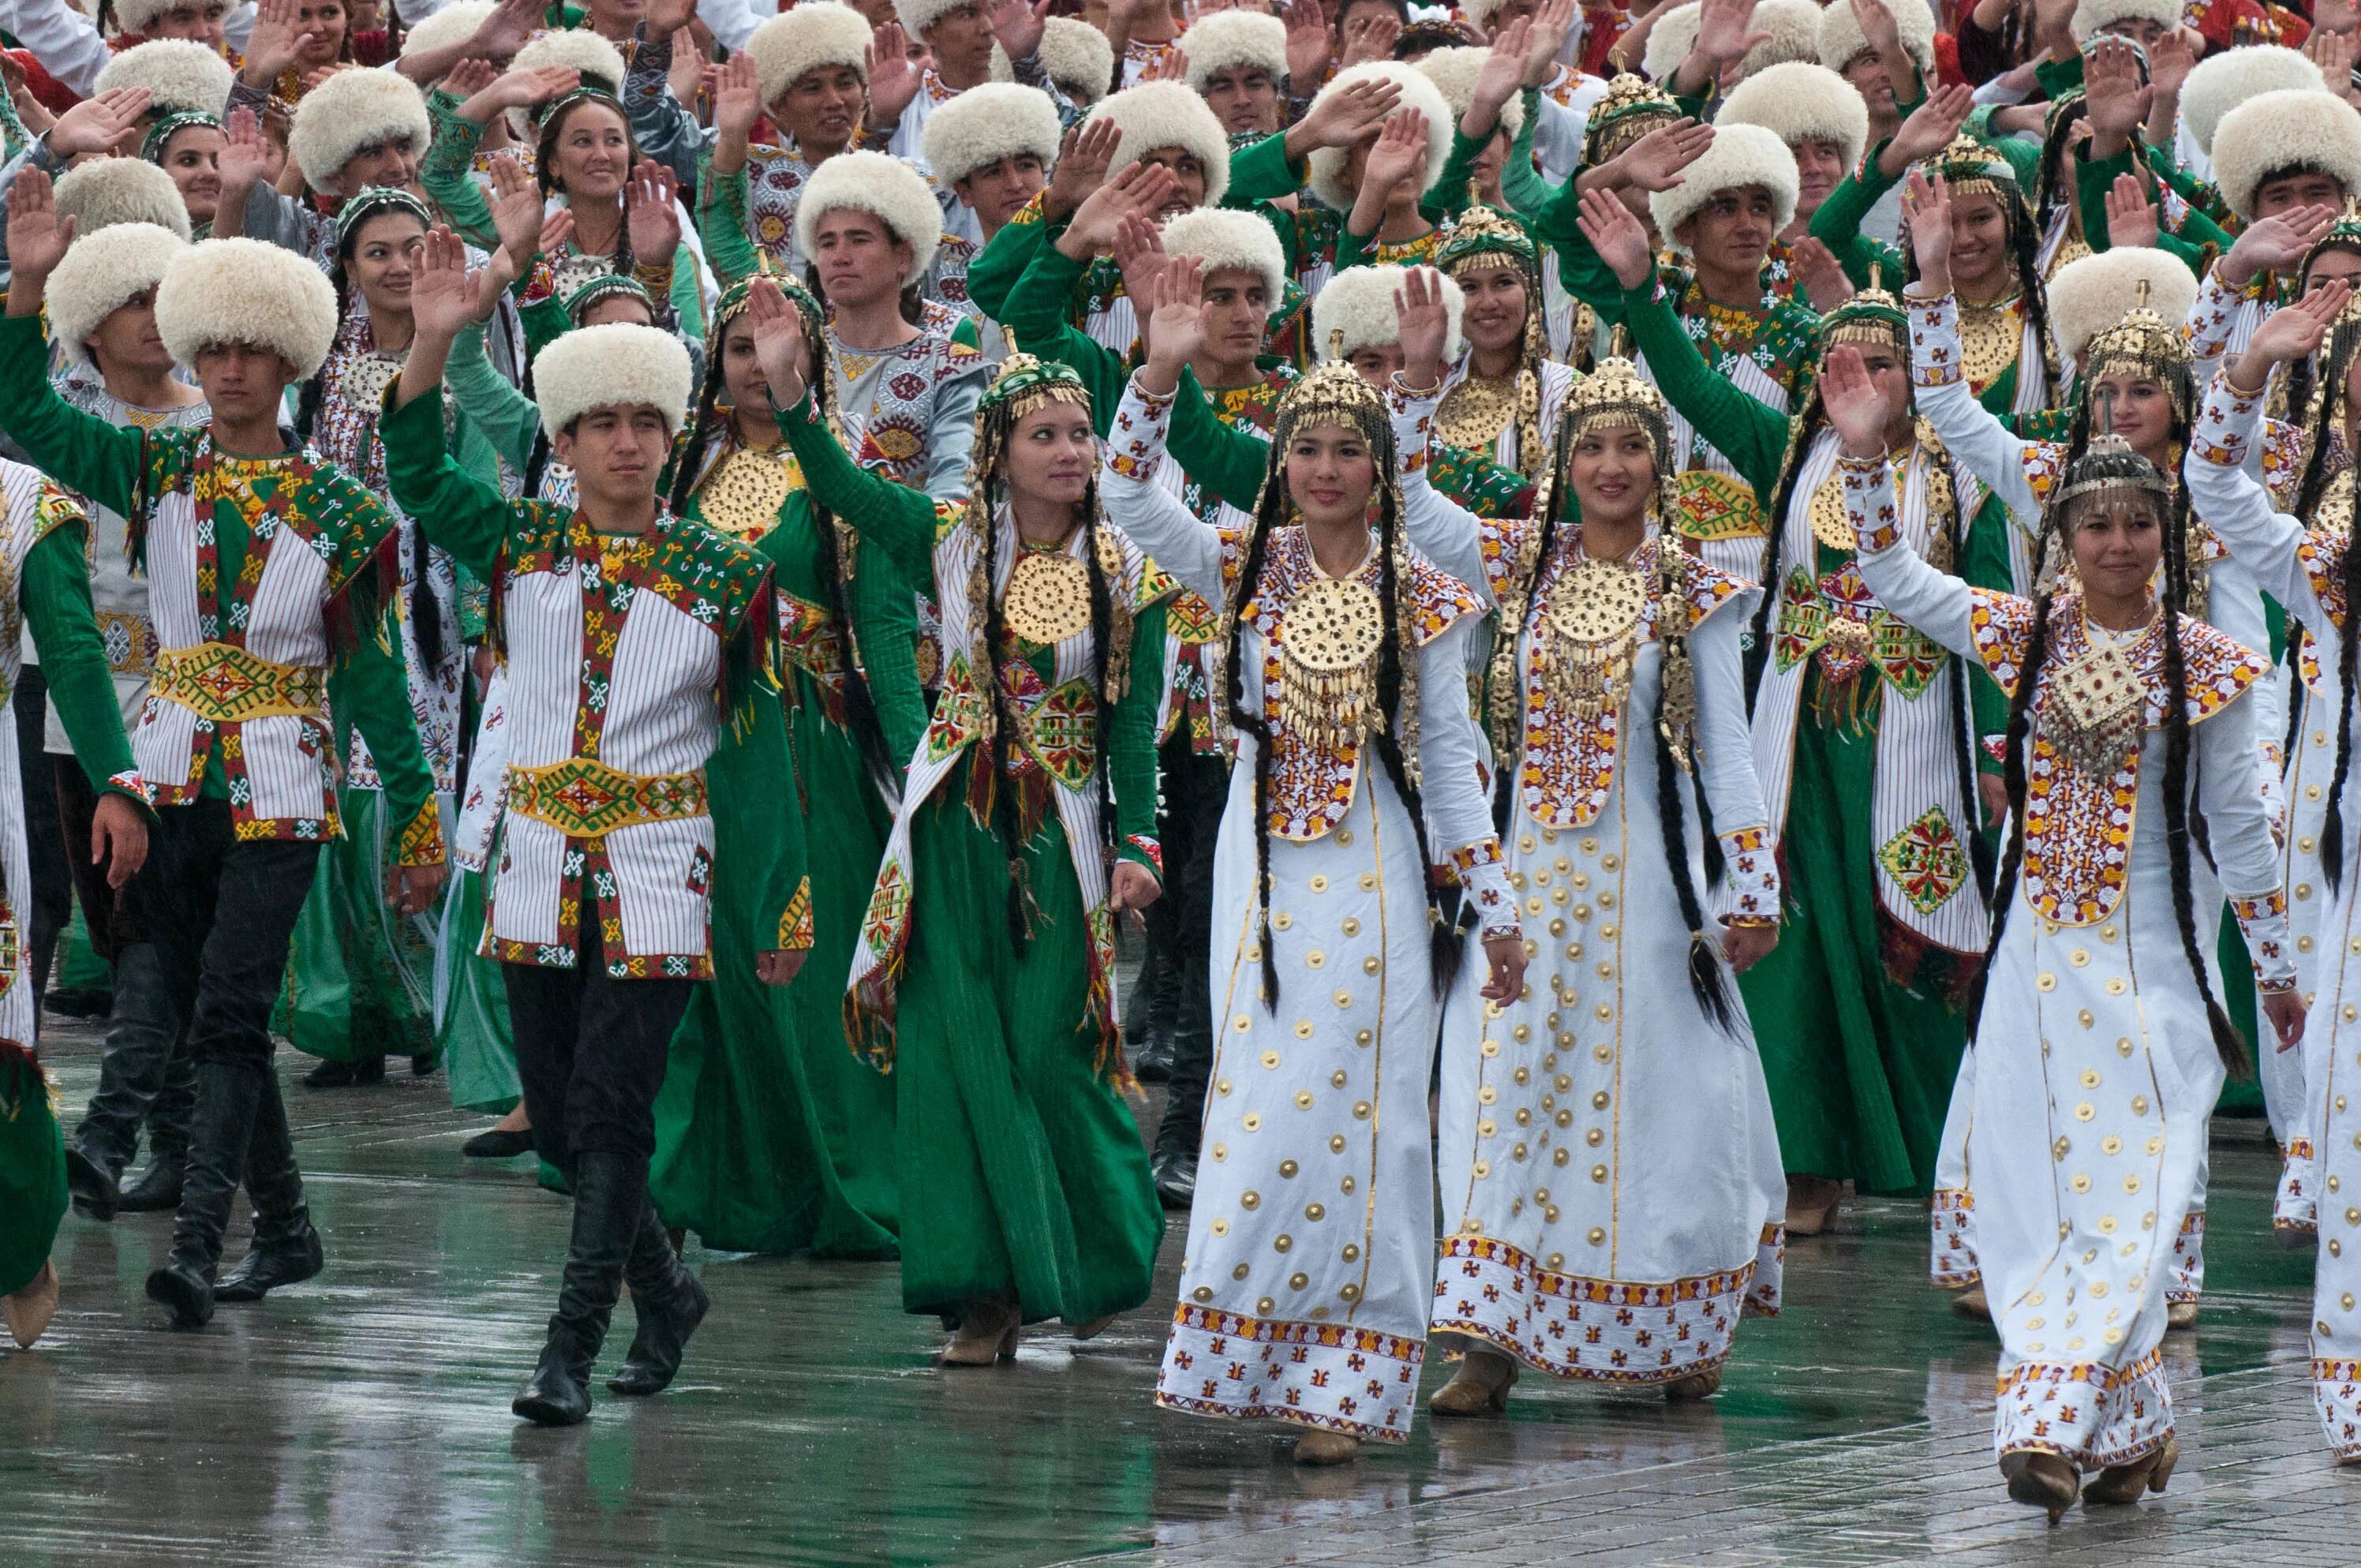 Туркмен национальность. Народ Туркмении Туркменистане. Национальный костюм туркменов. Туркменистан Туркмен туркменка нация. Туркменистанская Национальная одежда.